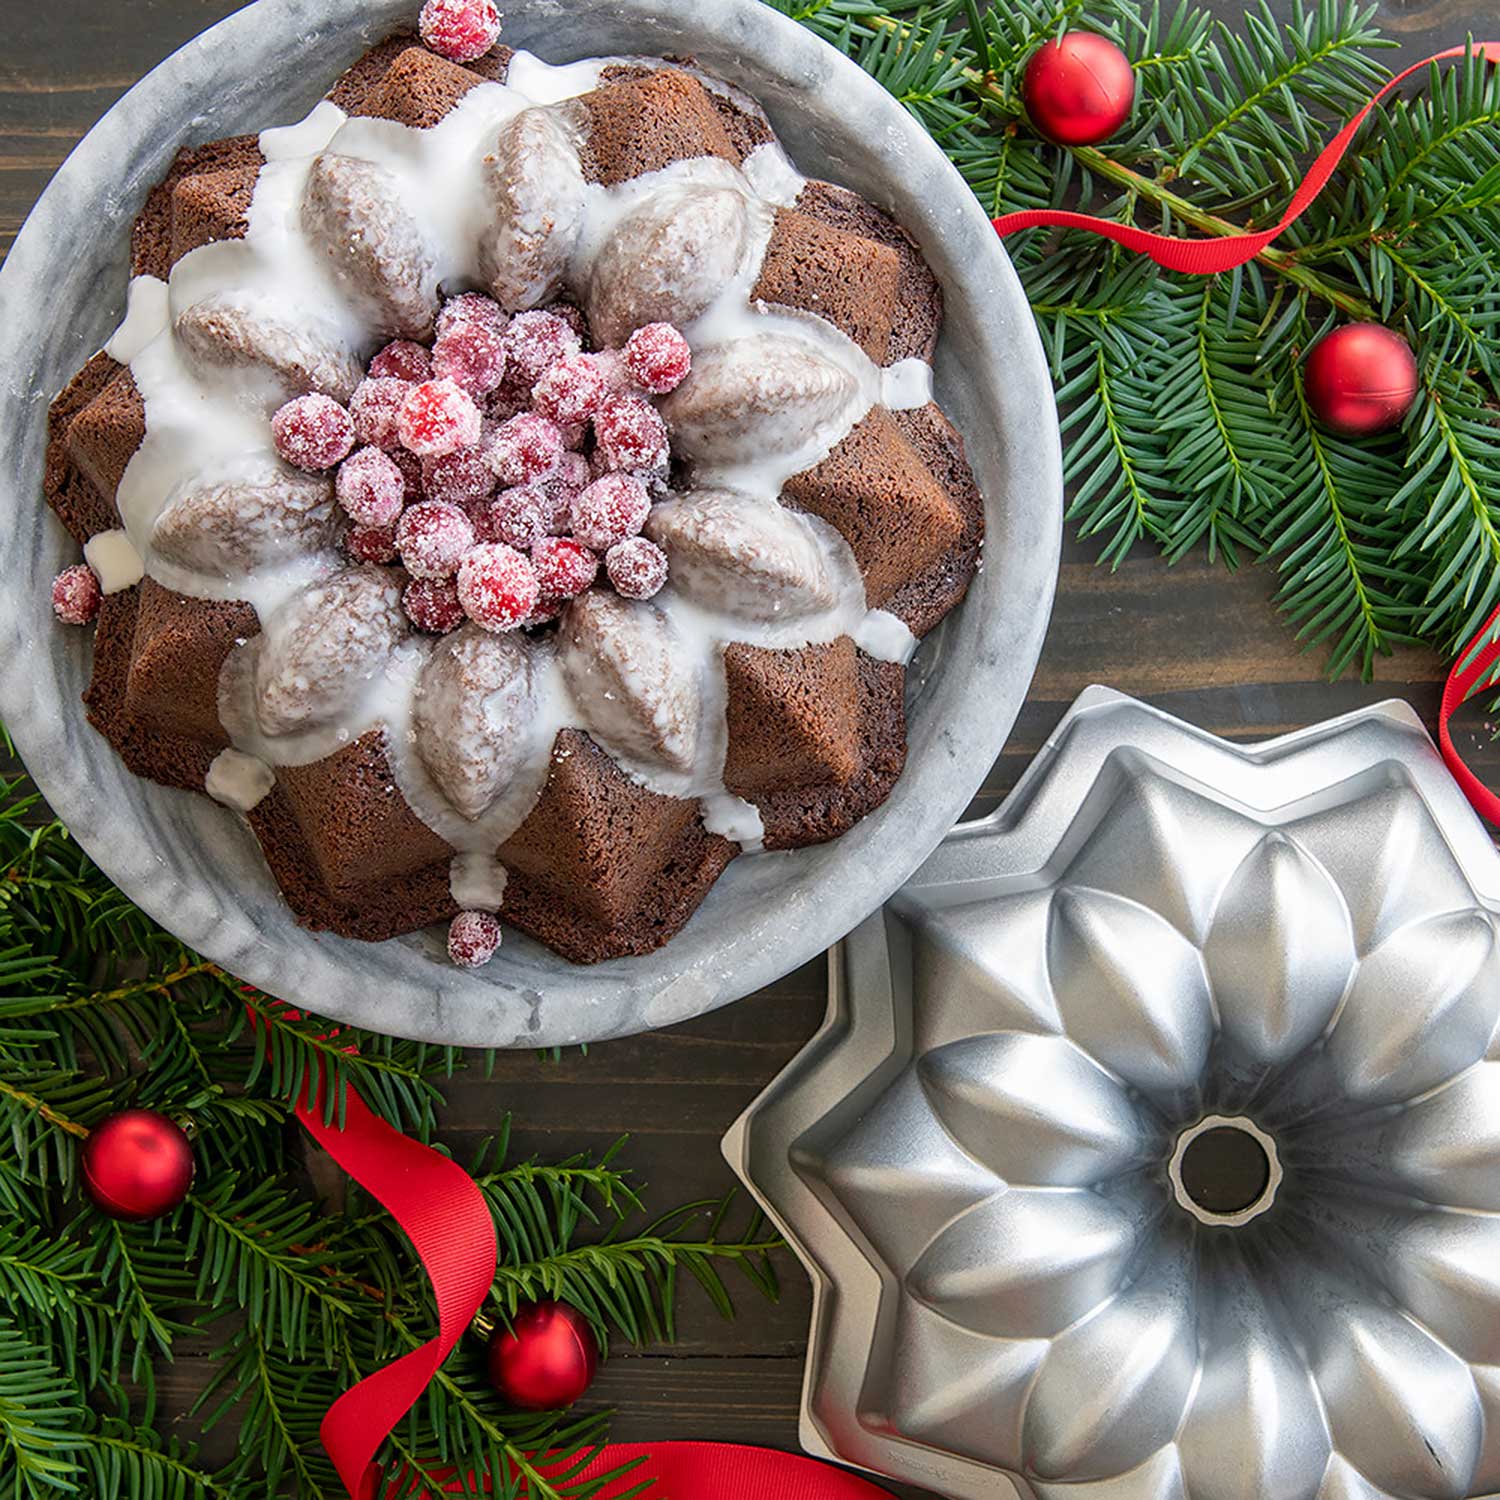 Nordic Ware Shortbread Pan Metal Holiday Baking Pan, Ornate Cake